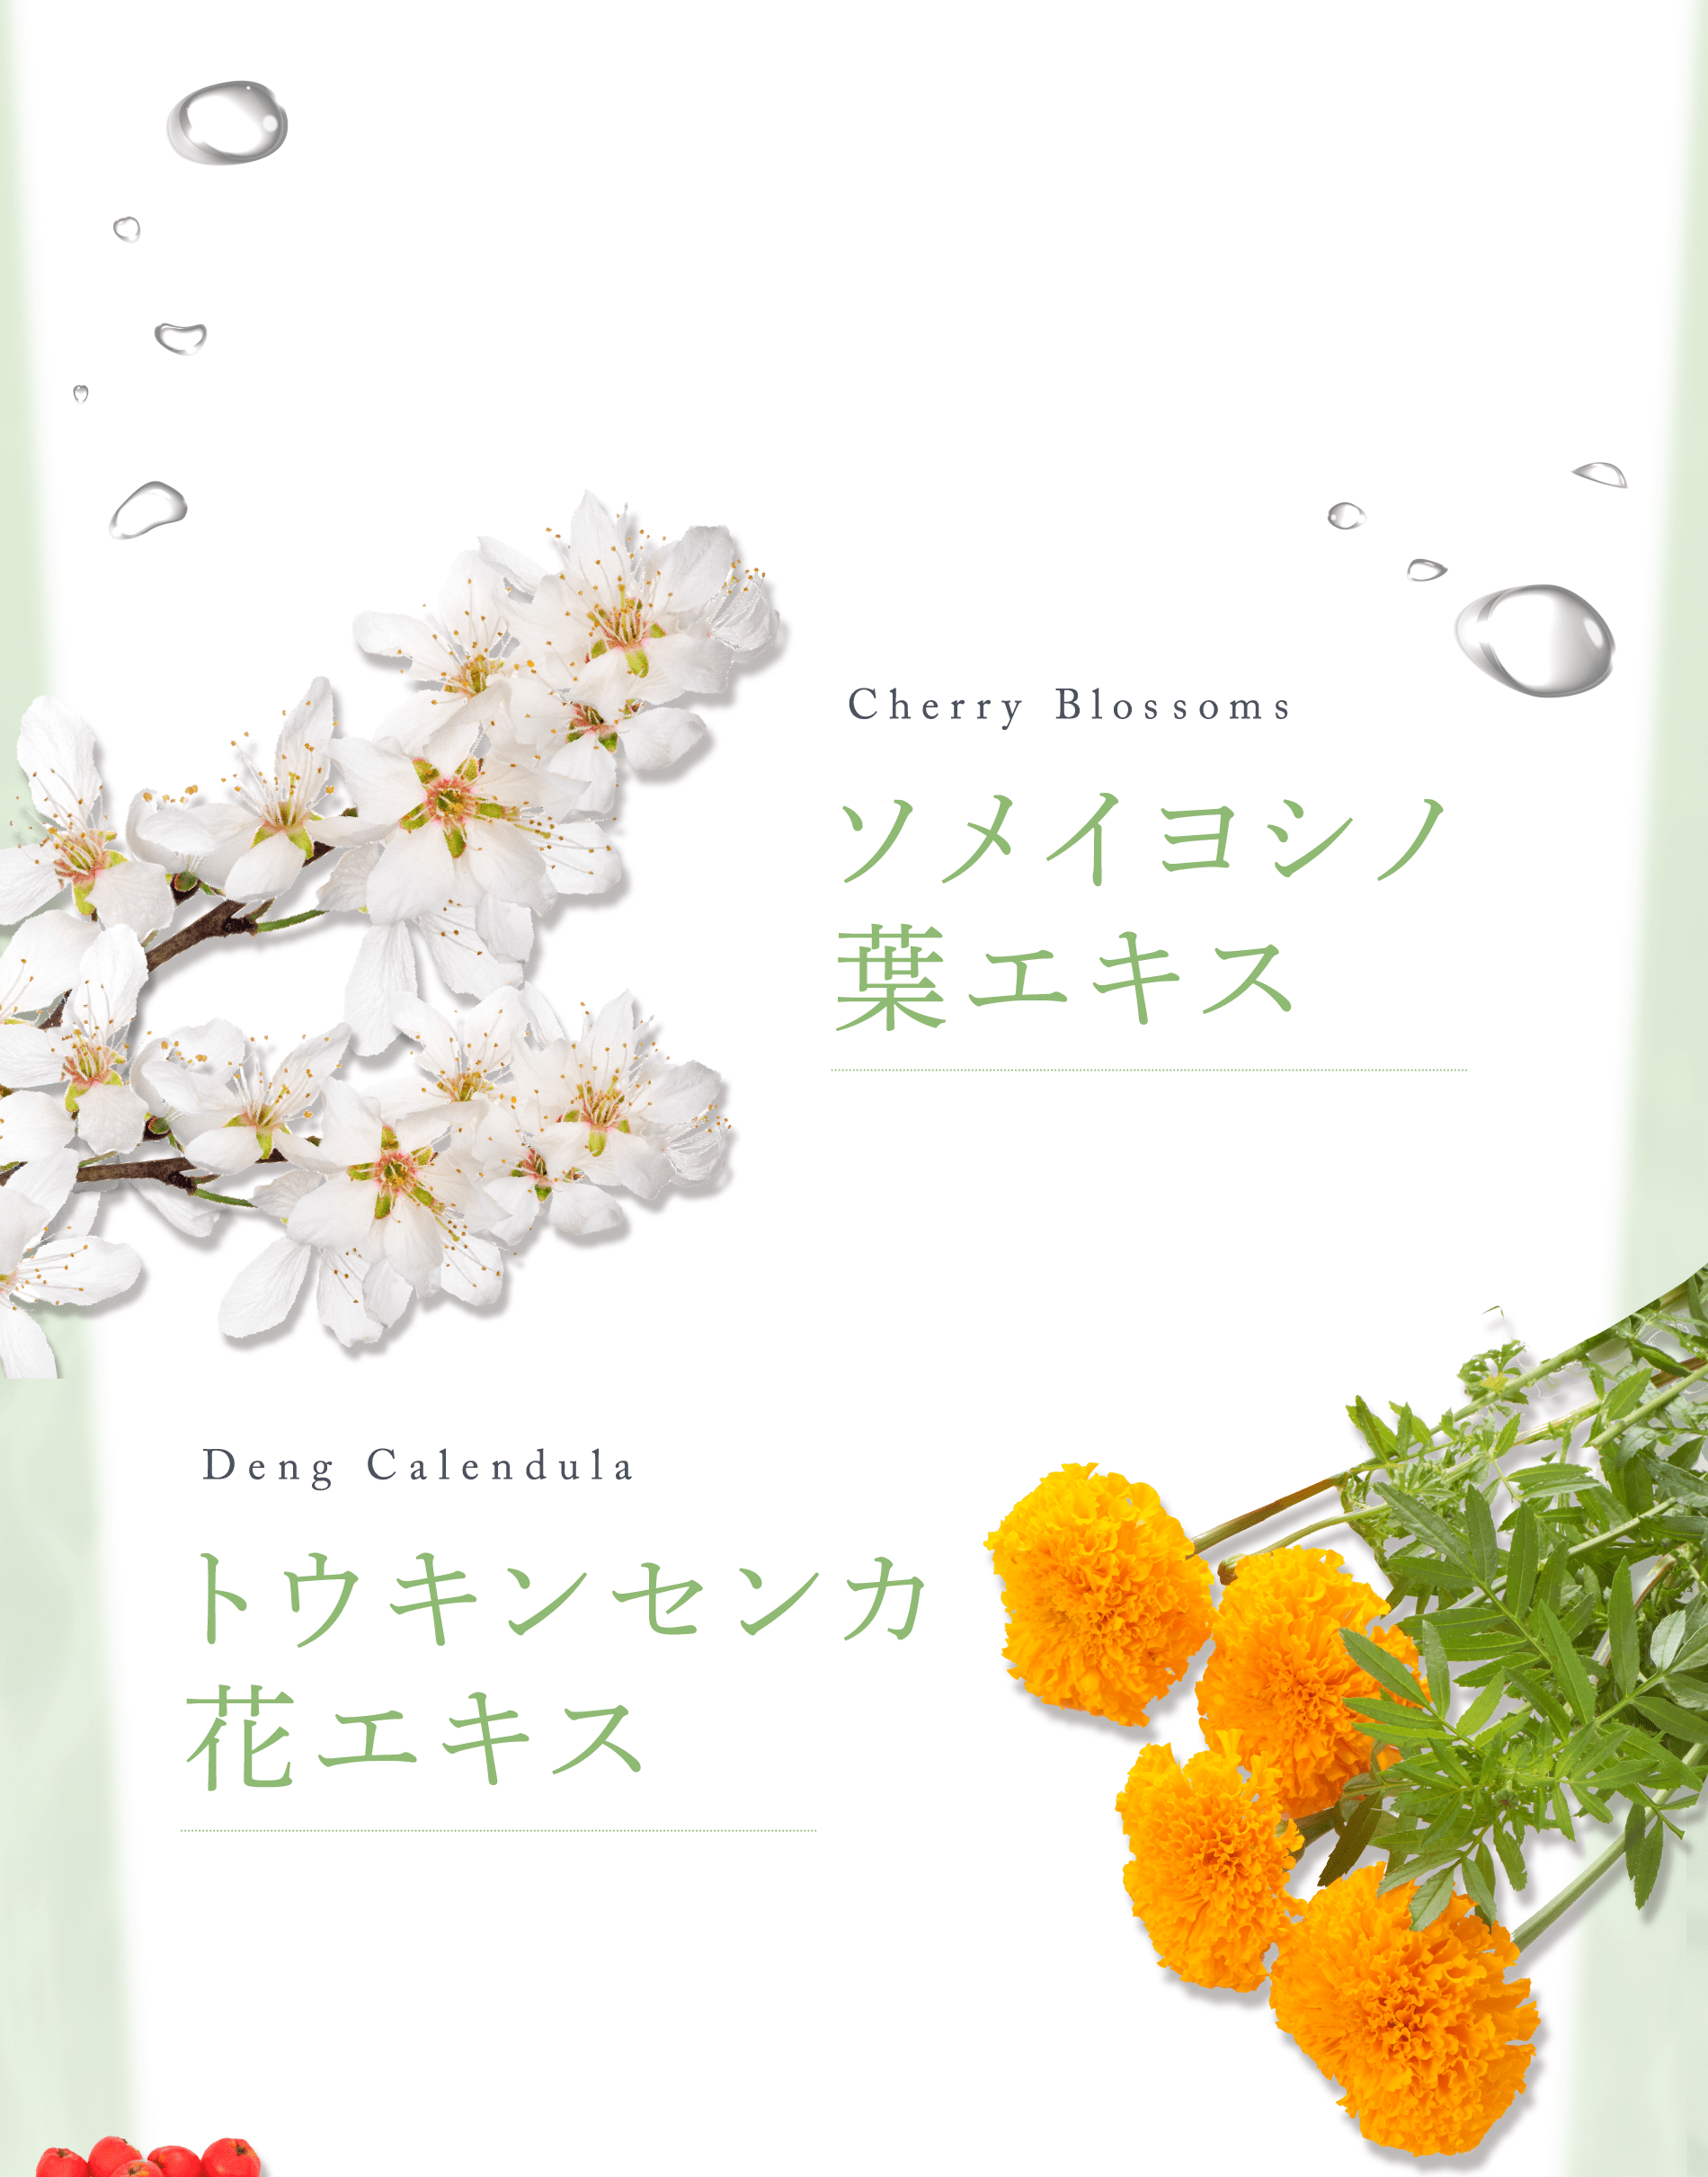 Cherry Blossoms ソメイヨシノ葉エキス Deng Calendula トウキンセンカ花エキス